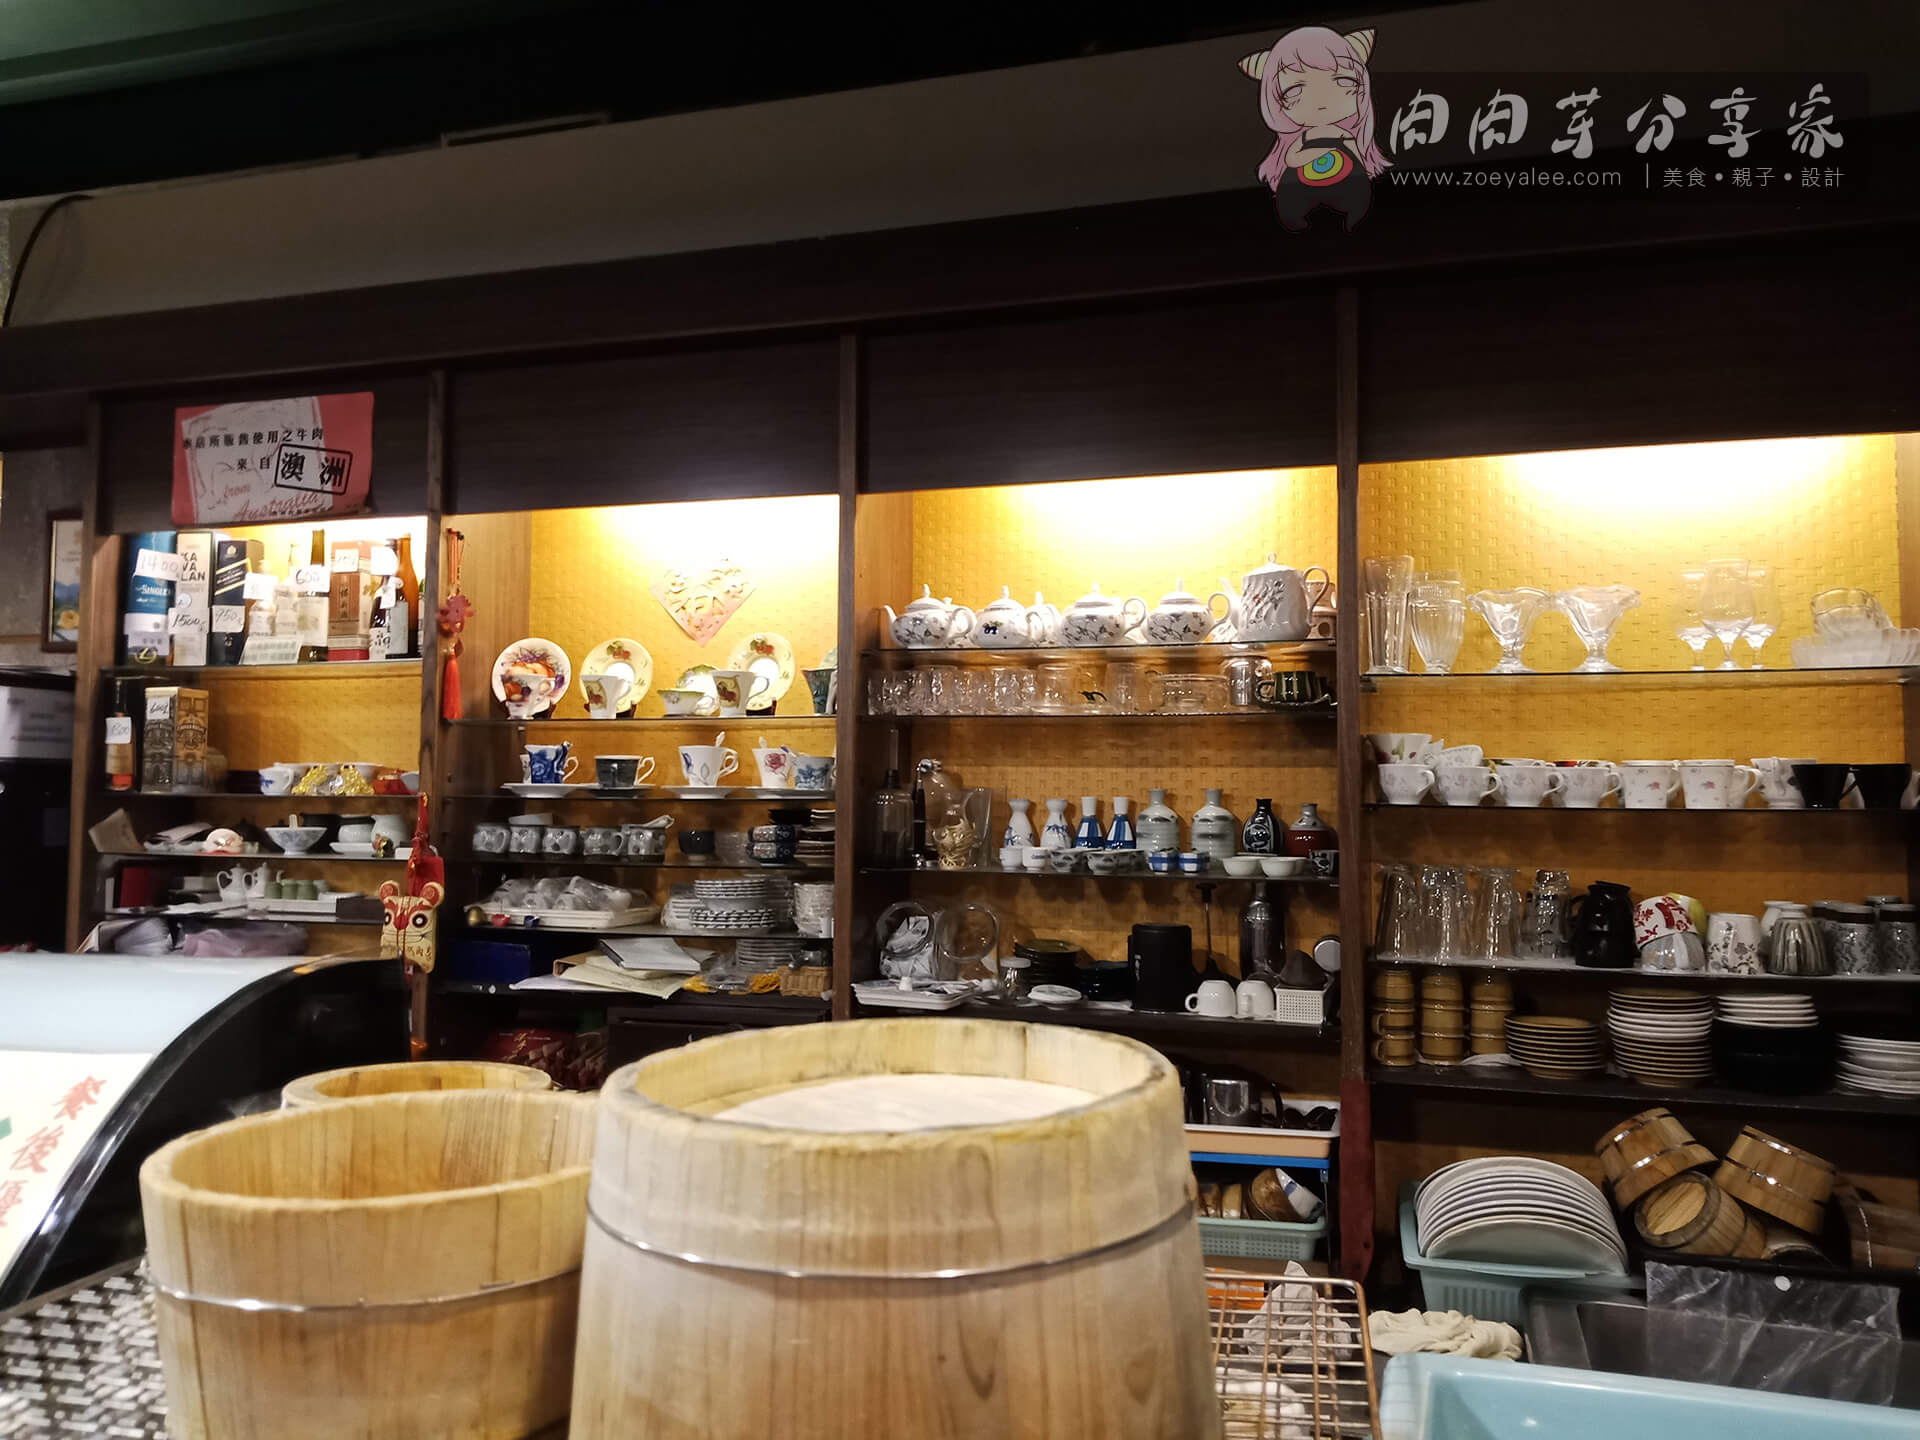 壹等賞景觀茶園餐廳飲品區內用擺放茶具處